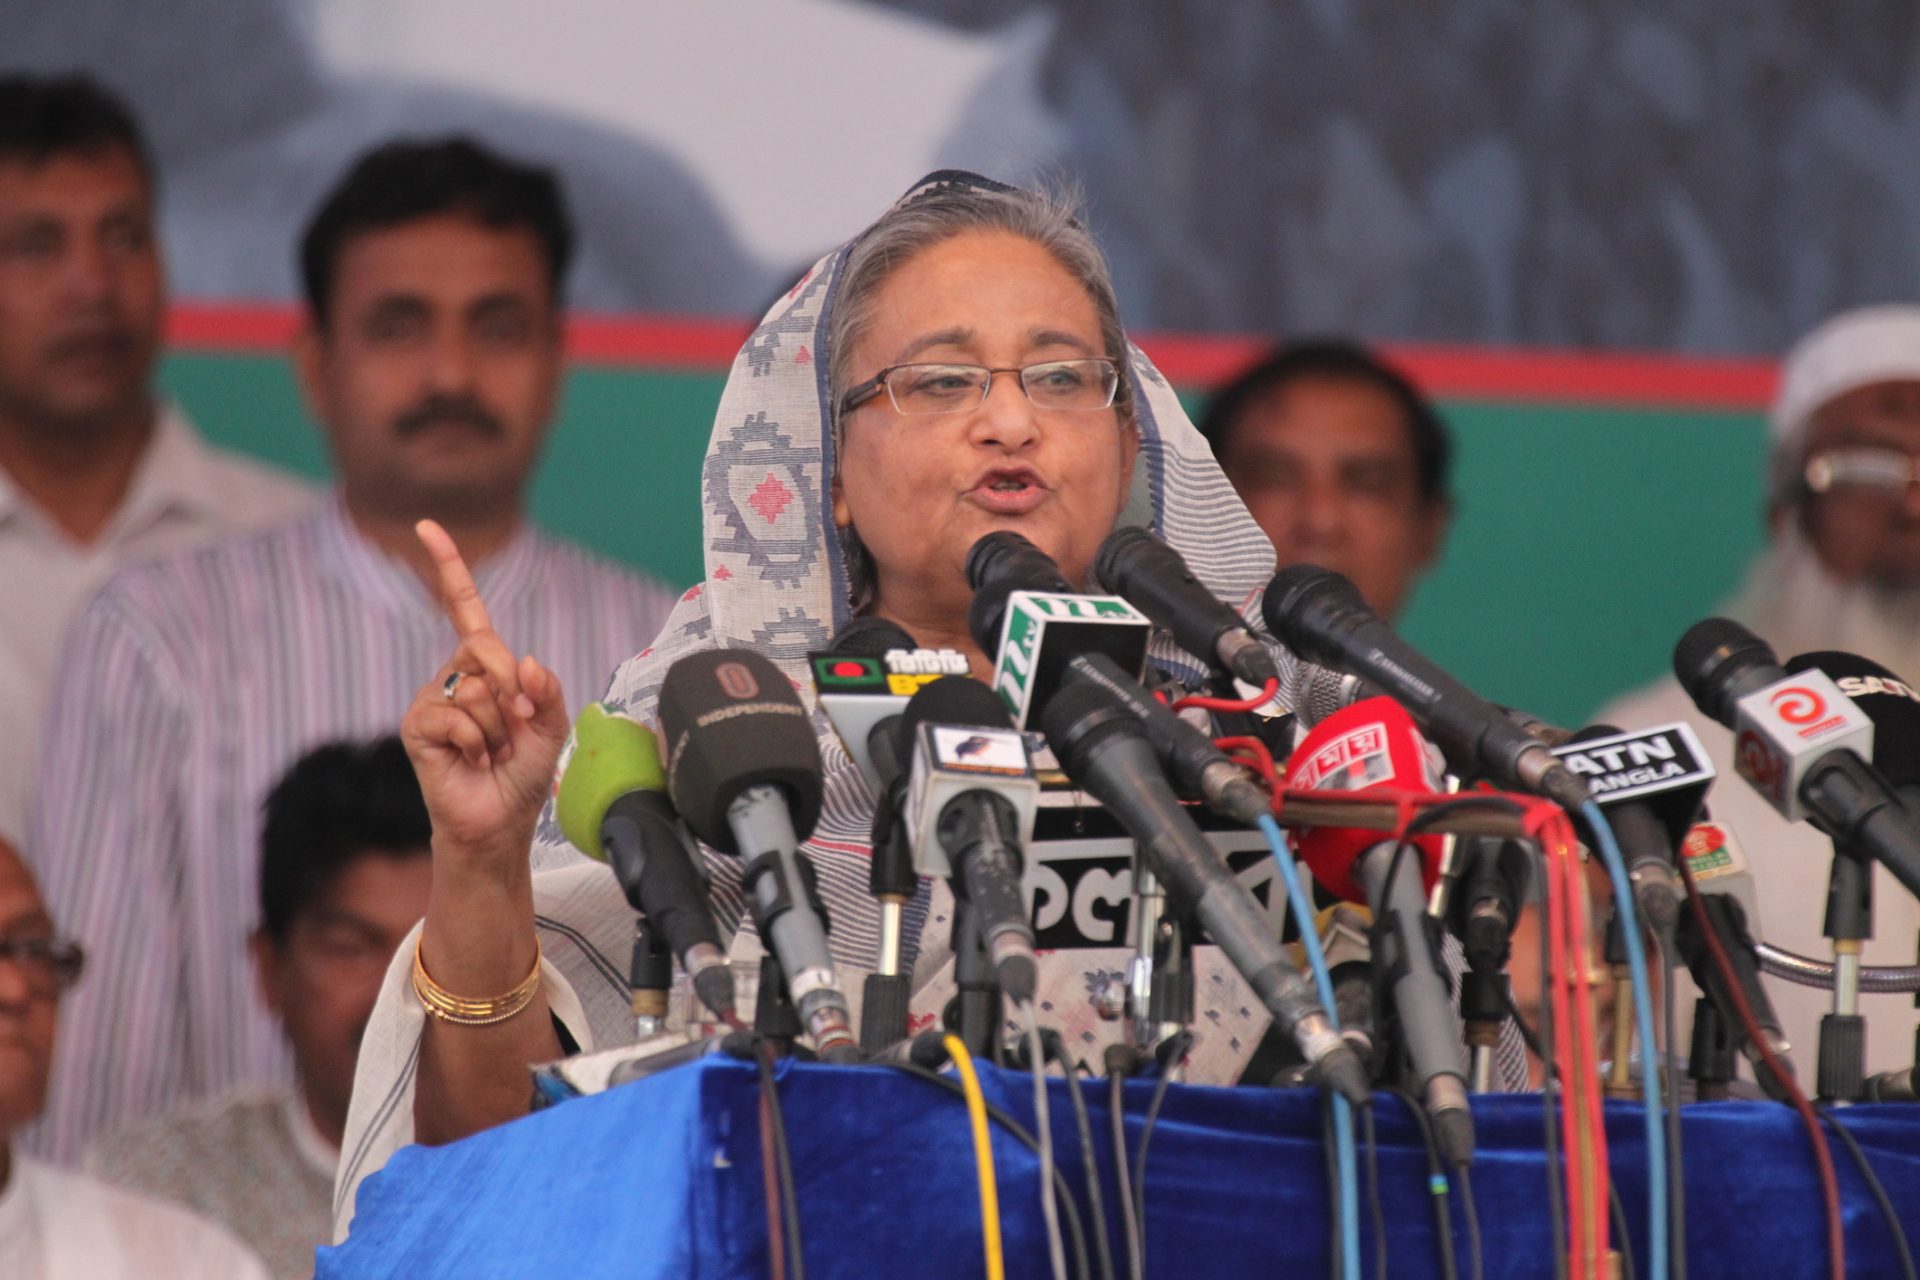 Catorze pessoas condenadas à morte pela tentativa de assassinato da primeira-ministra do Bangladesh